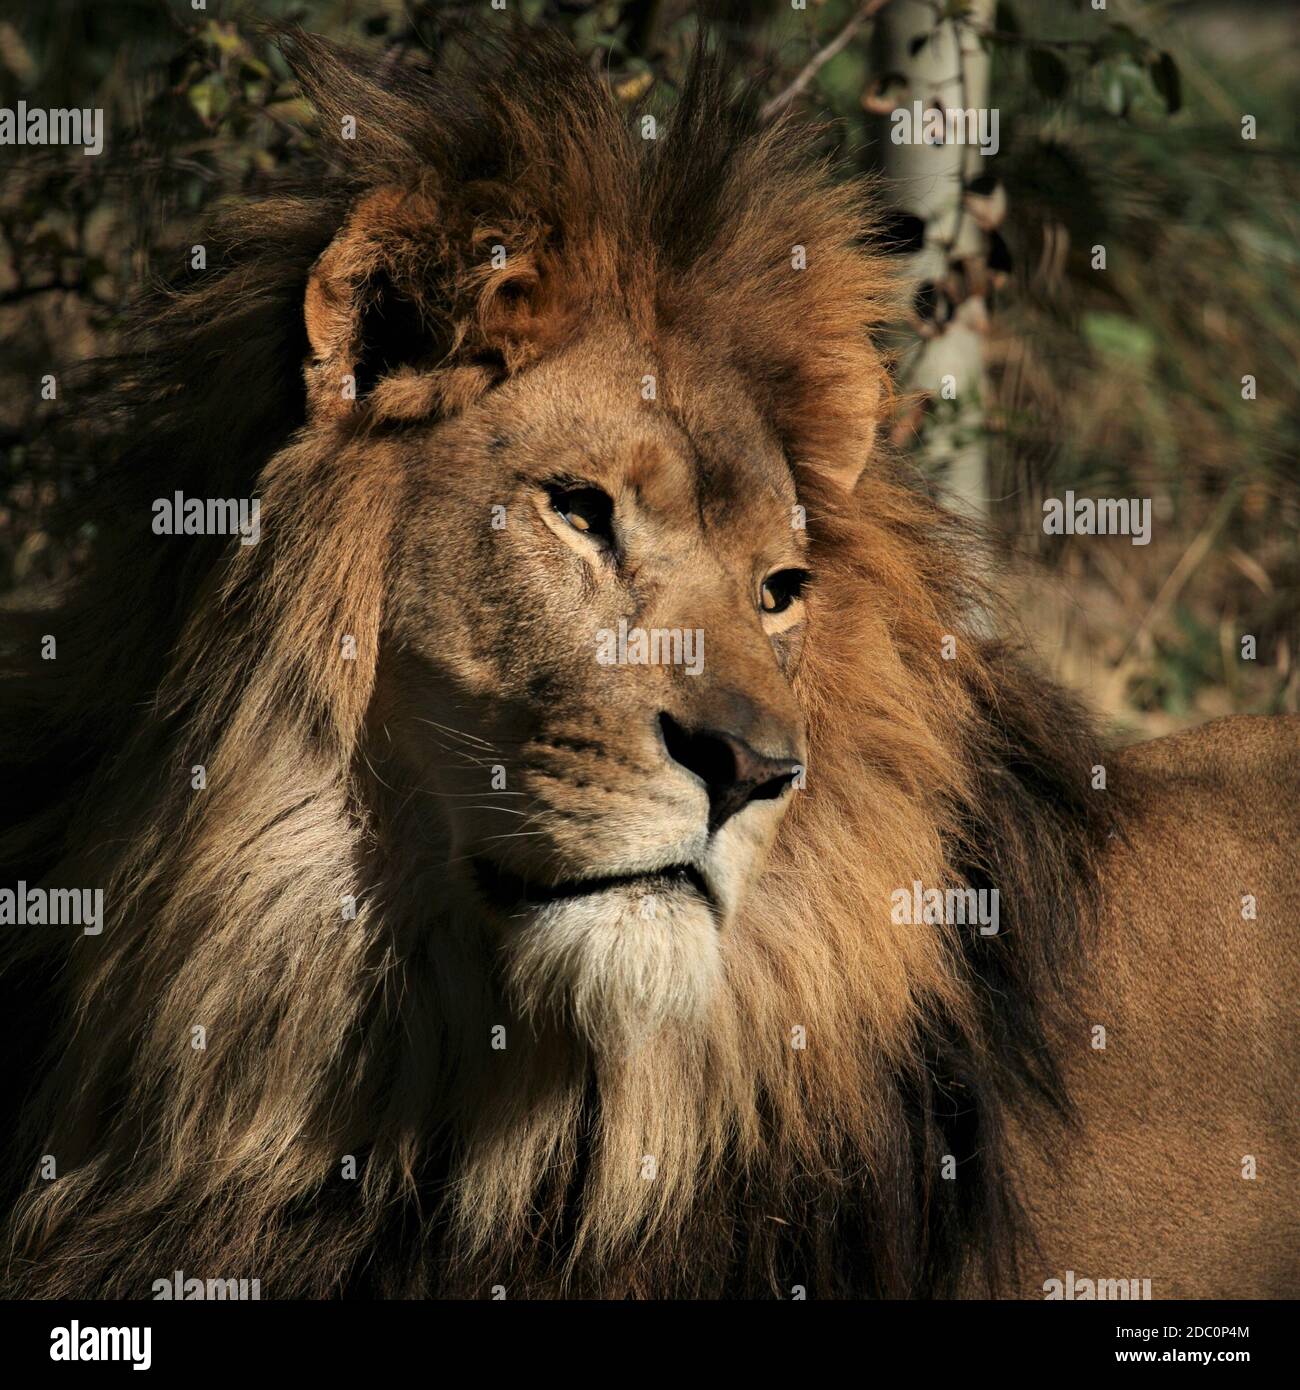 "León", "León africano", "león de la historia", "manía de los leones", "fauna africana", "rey de la selva", orgullo", "cabeza de los leones blancos" Foto de stock